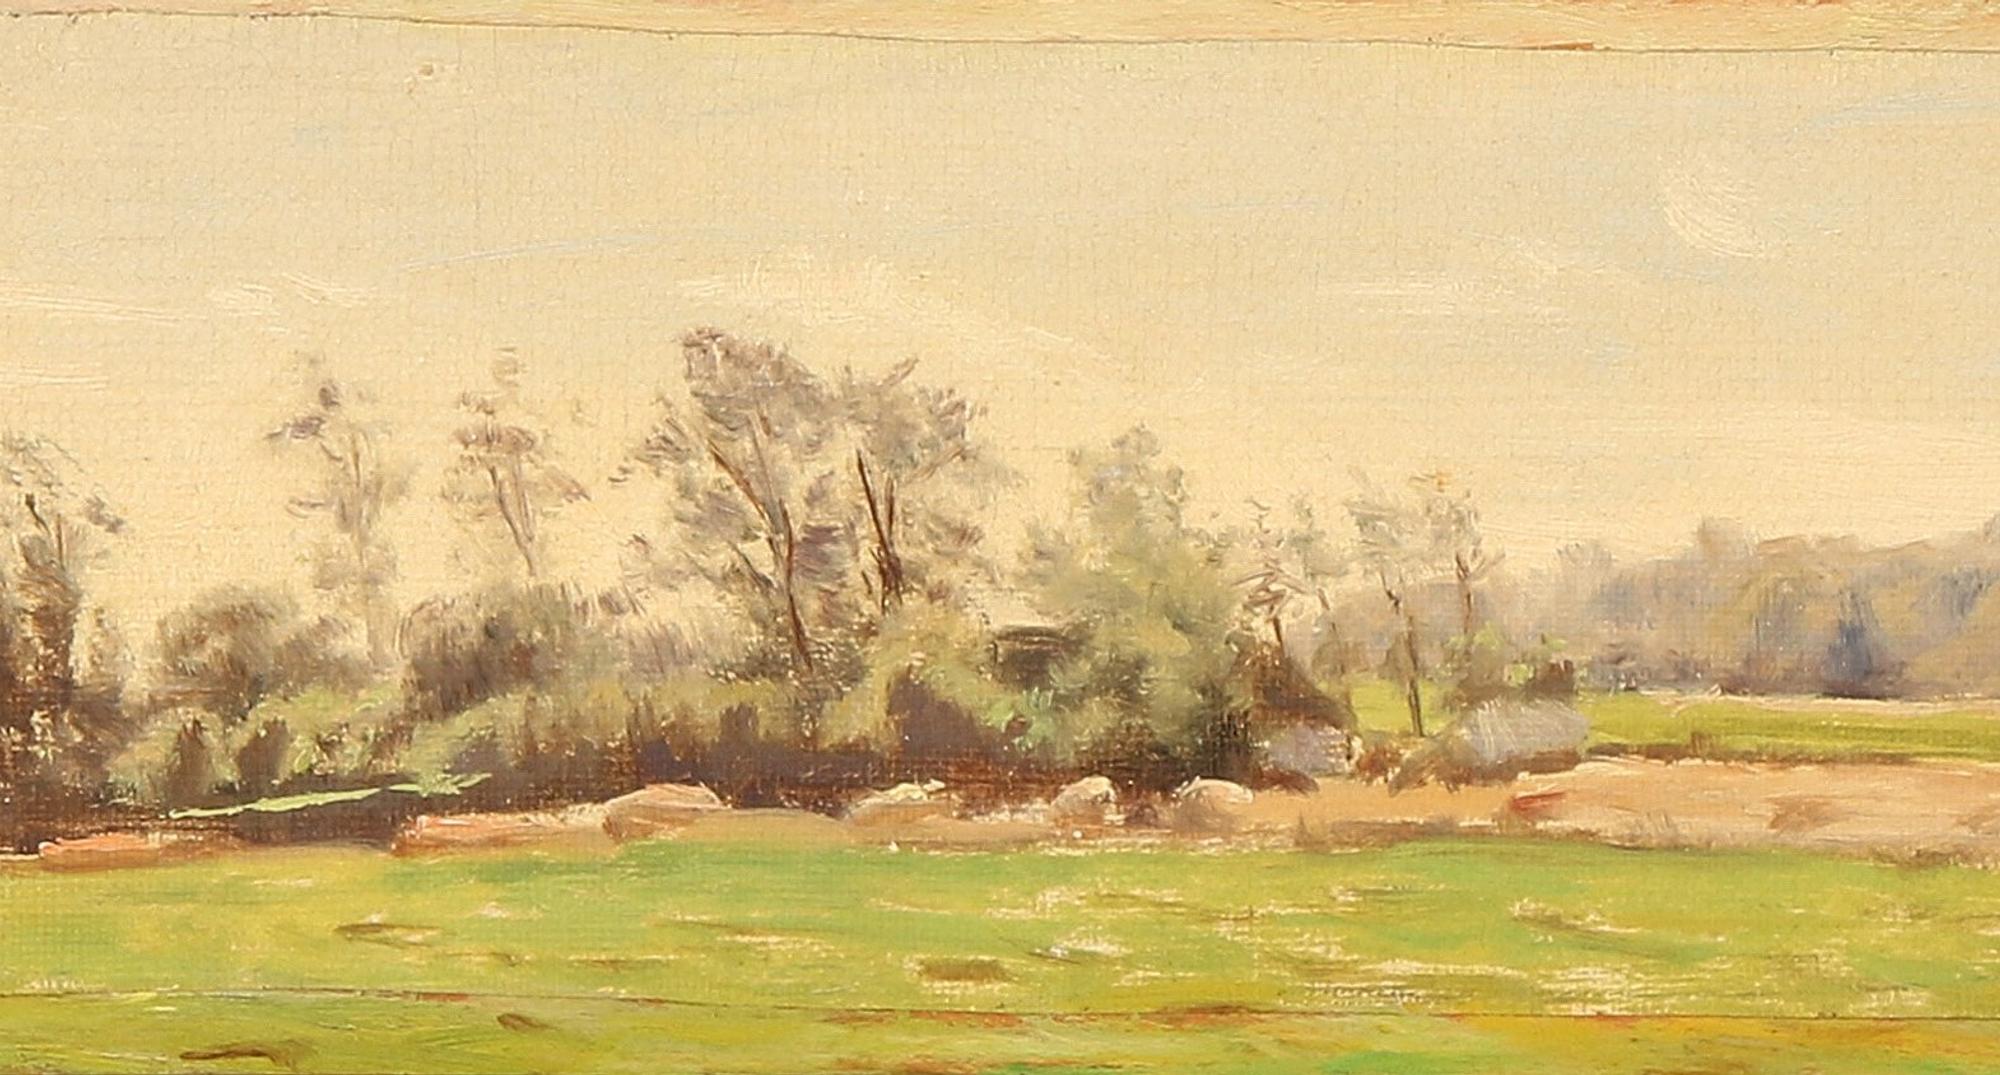 Emilie Mundt: ‘Landscape at Vallerød’ 1898
